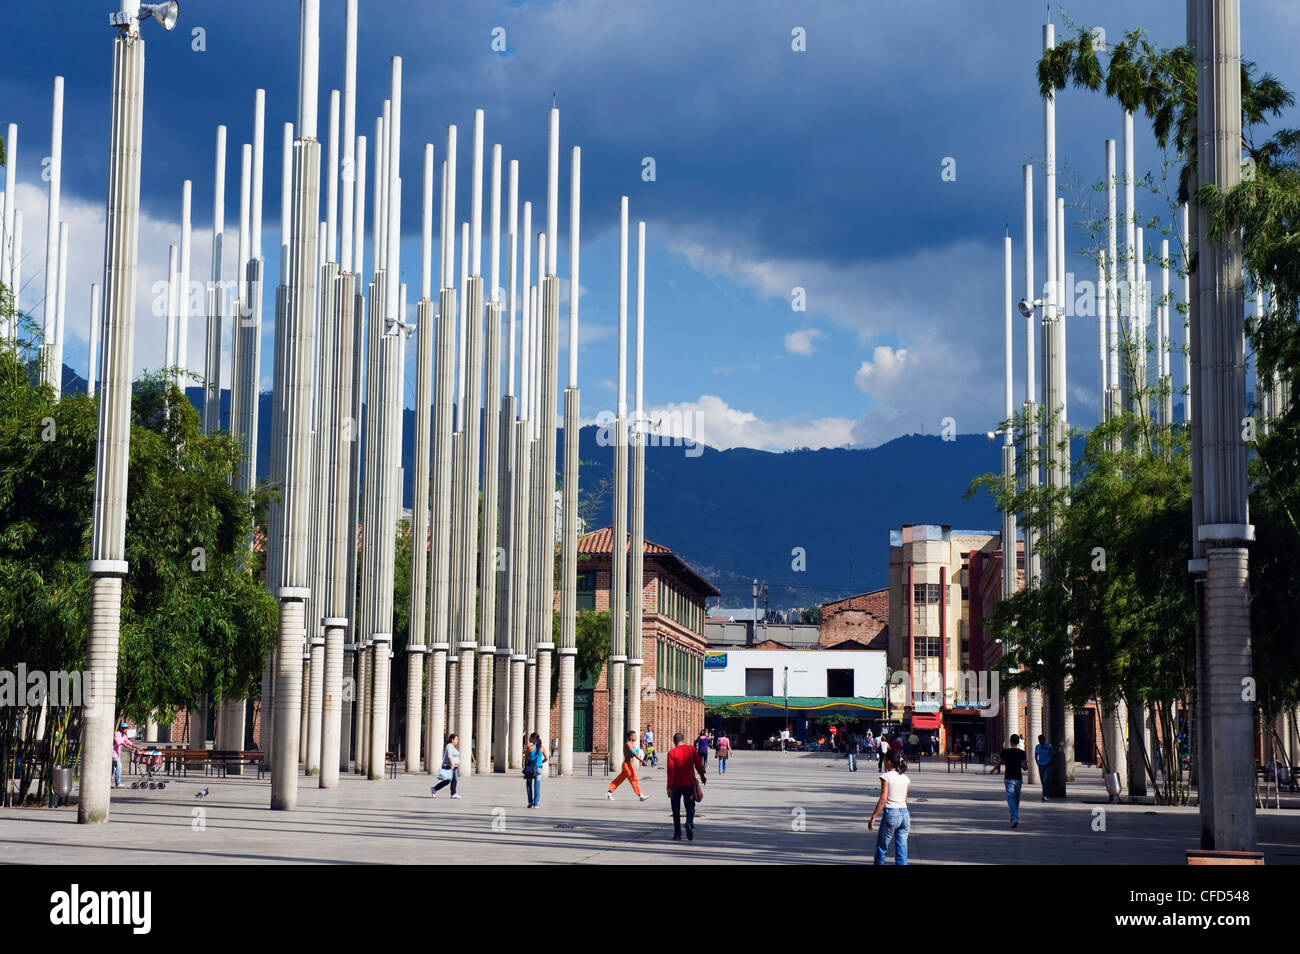 Installation d'art moderne en centre-ville, Medellin, Colombie, Amérique du Sud Banque D'Images